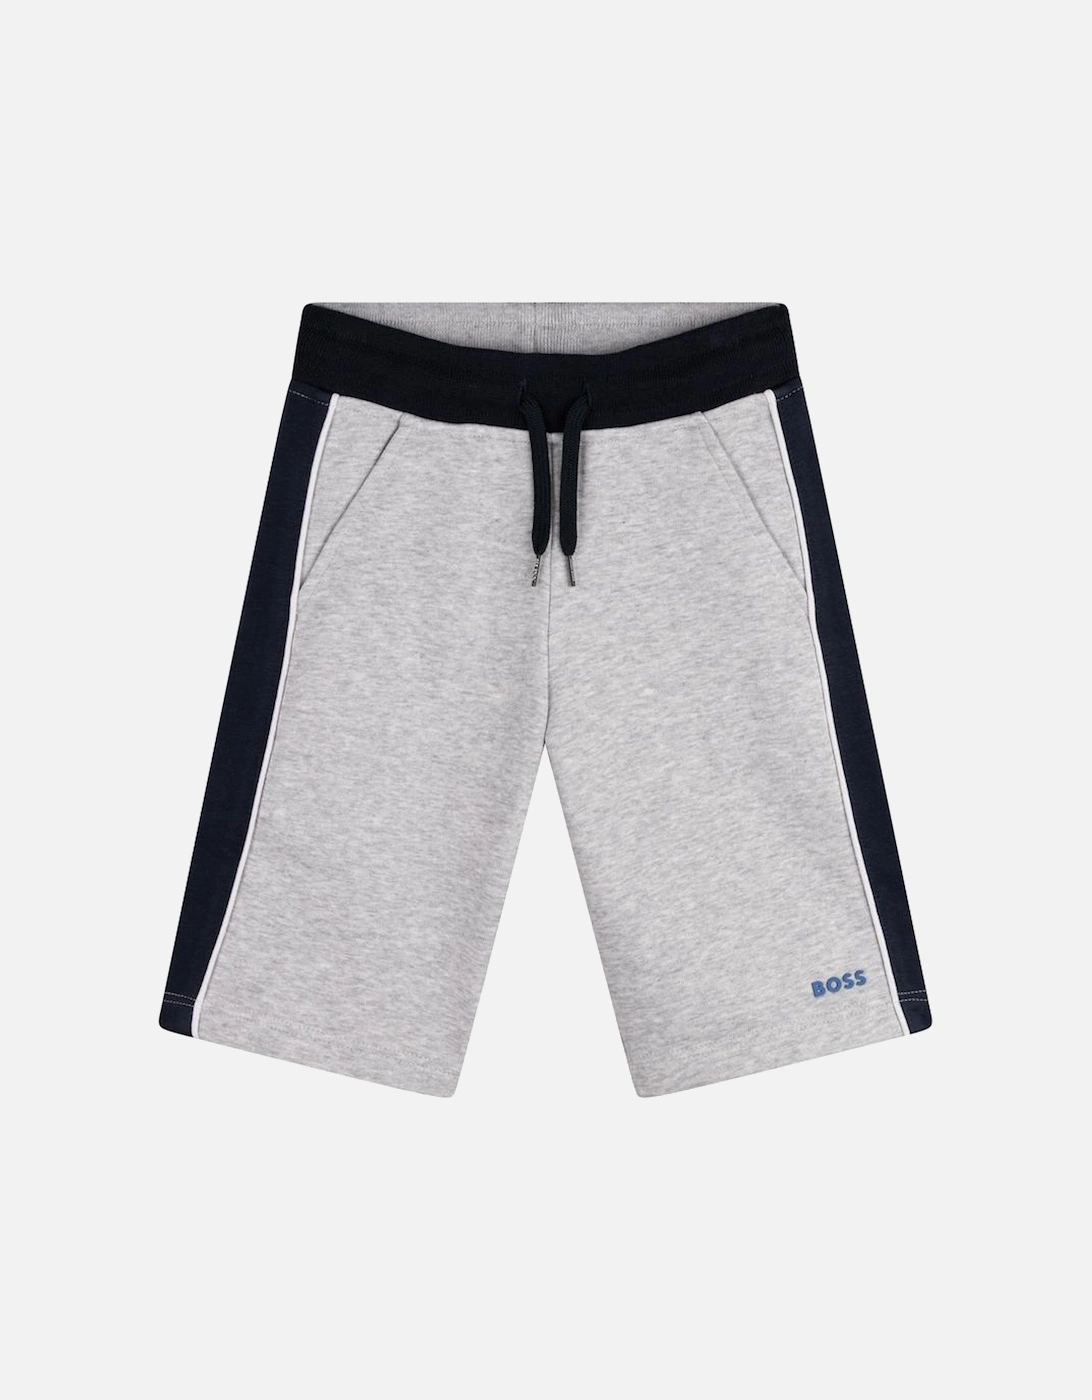 Boys Grey / Black Bermuda Shorts, 3 of 2